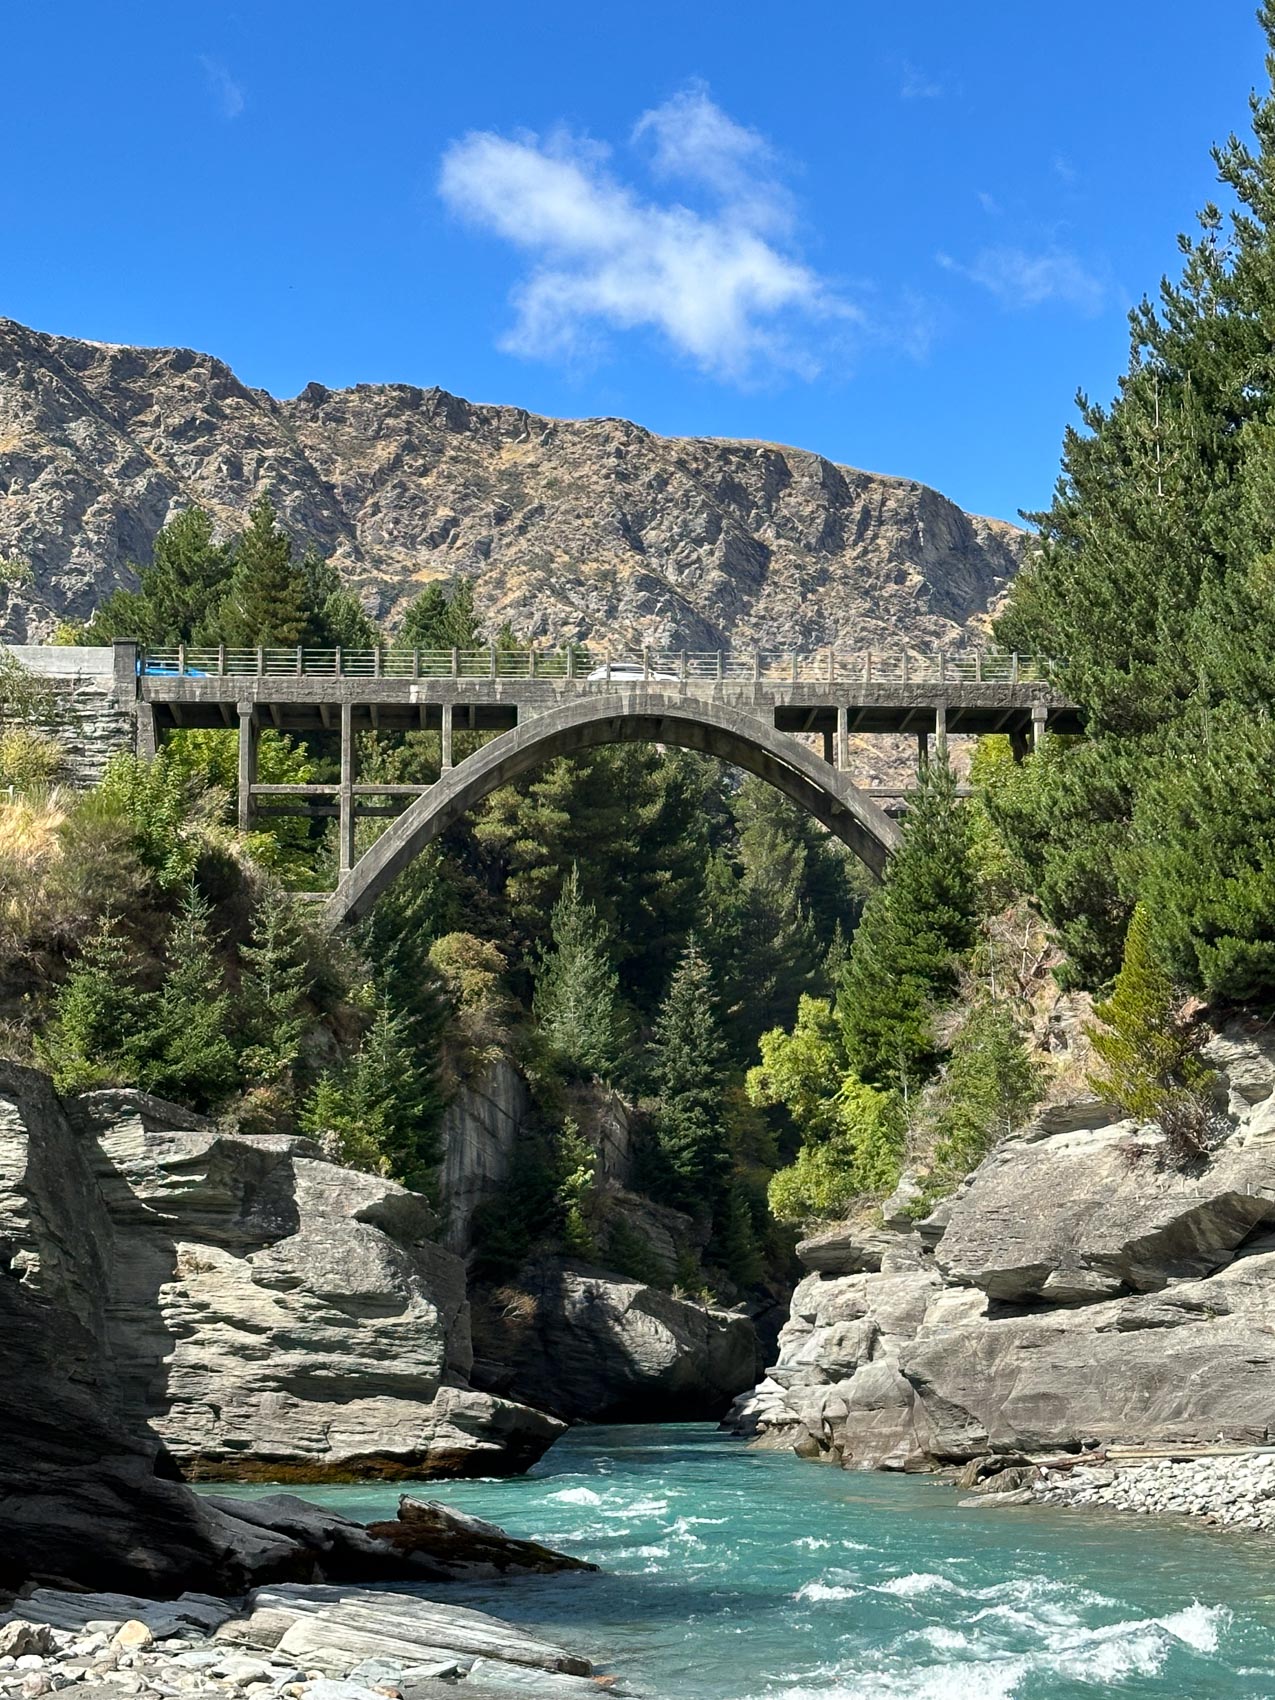 The bridge at Shotover Canyon